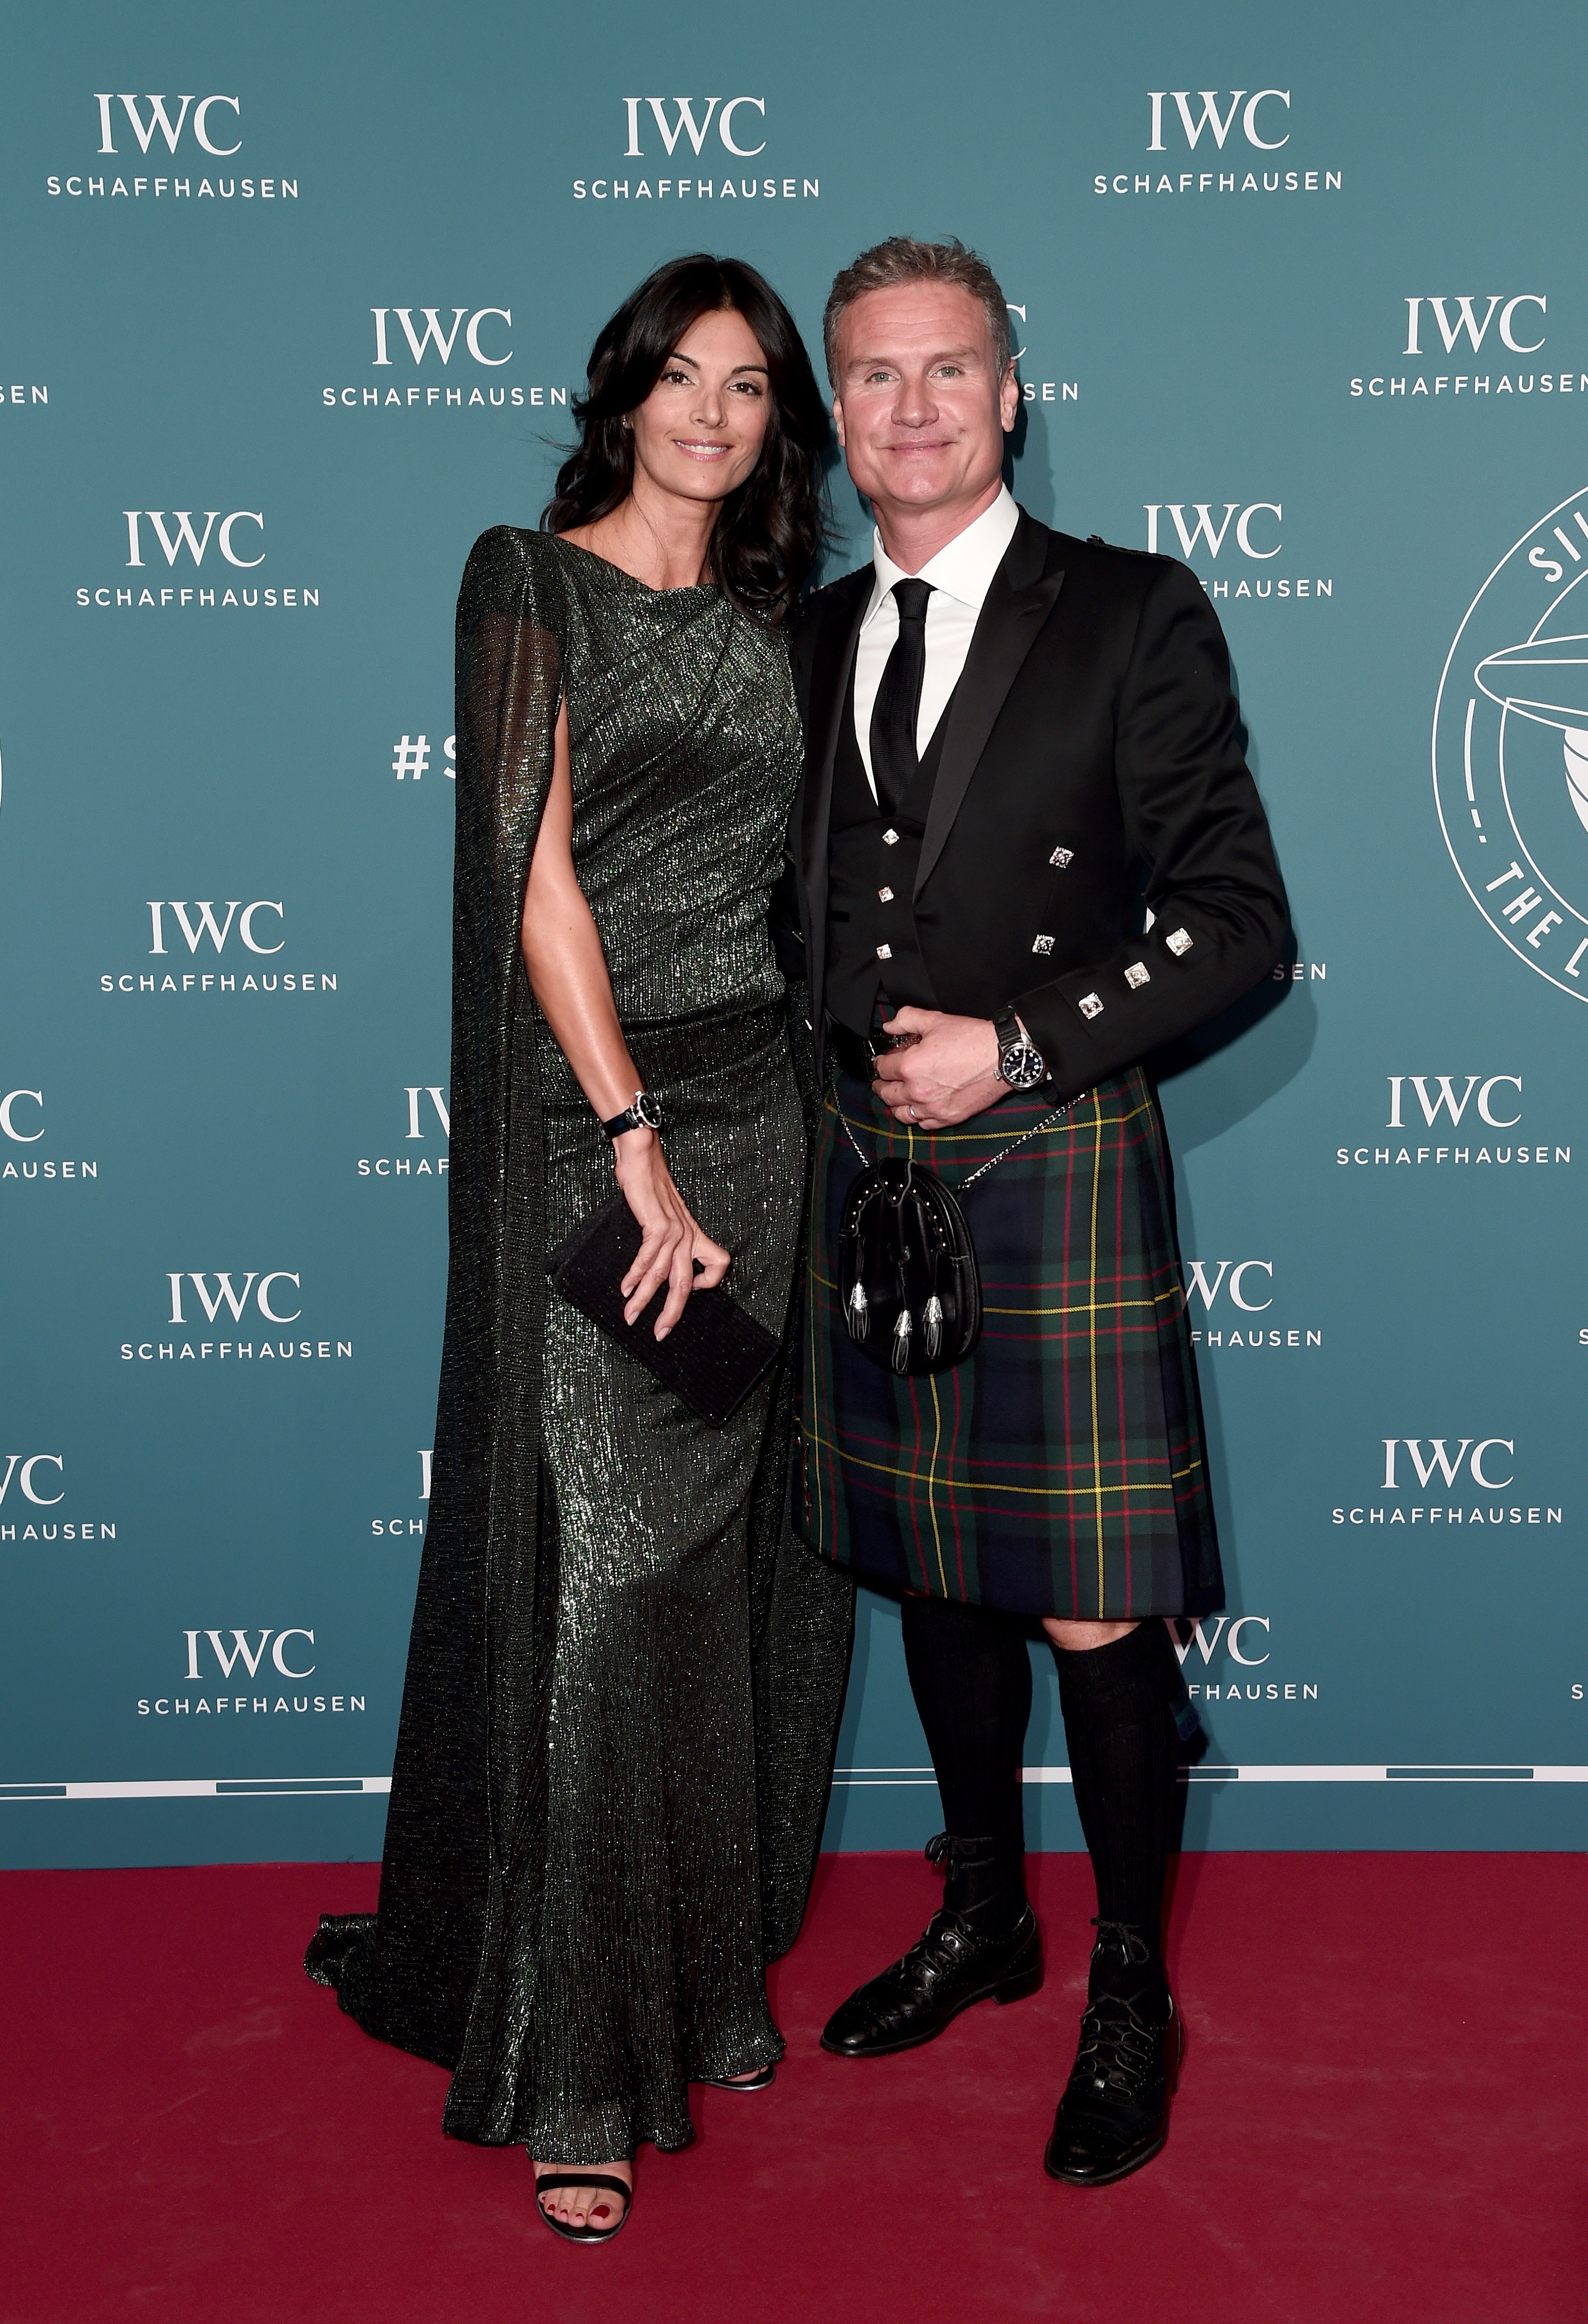 IWC Schaffhausen welcomes new brand ambassador Bradley Cooper at